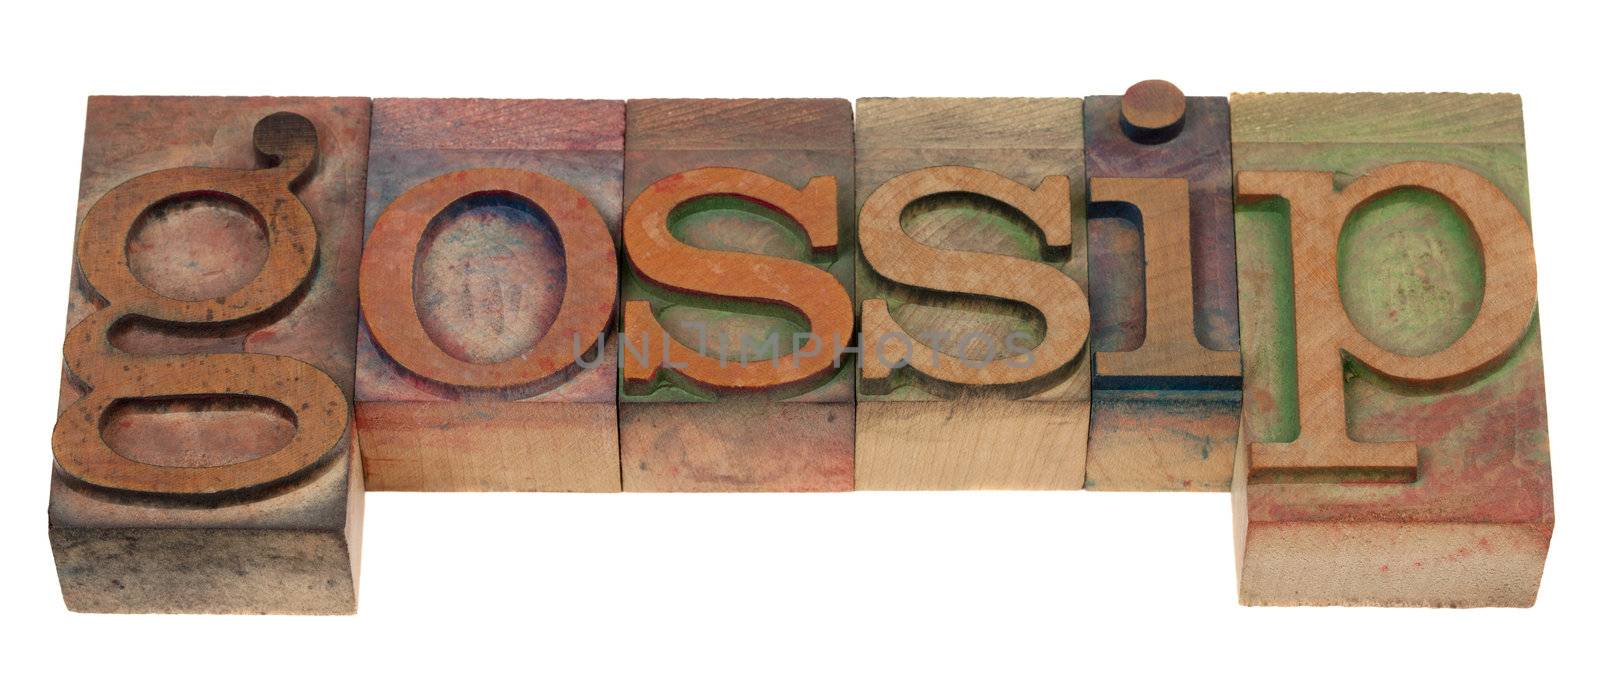 gossip - word spelled in vintage wooden letterpress printing blocks